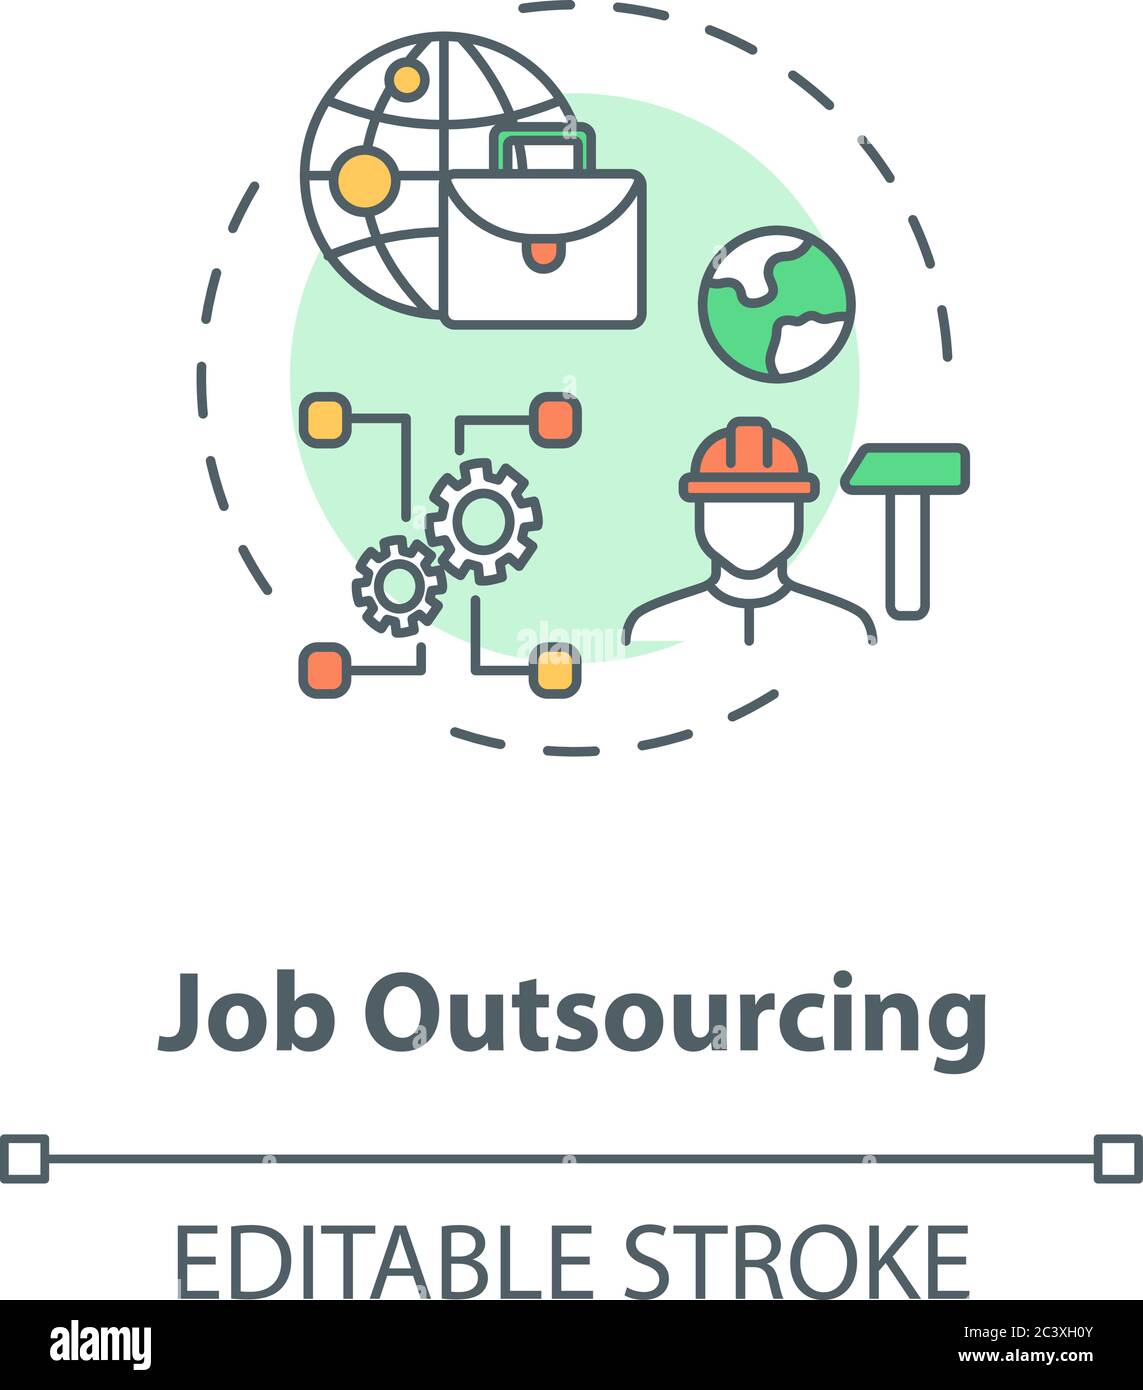 Job outsourcing concept icon Stock Vector